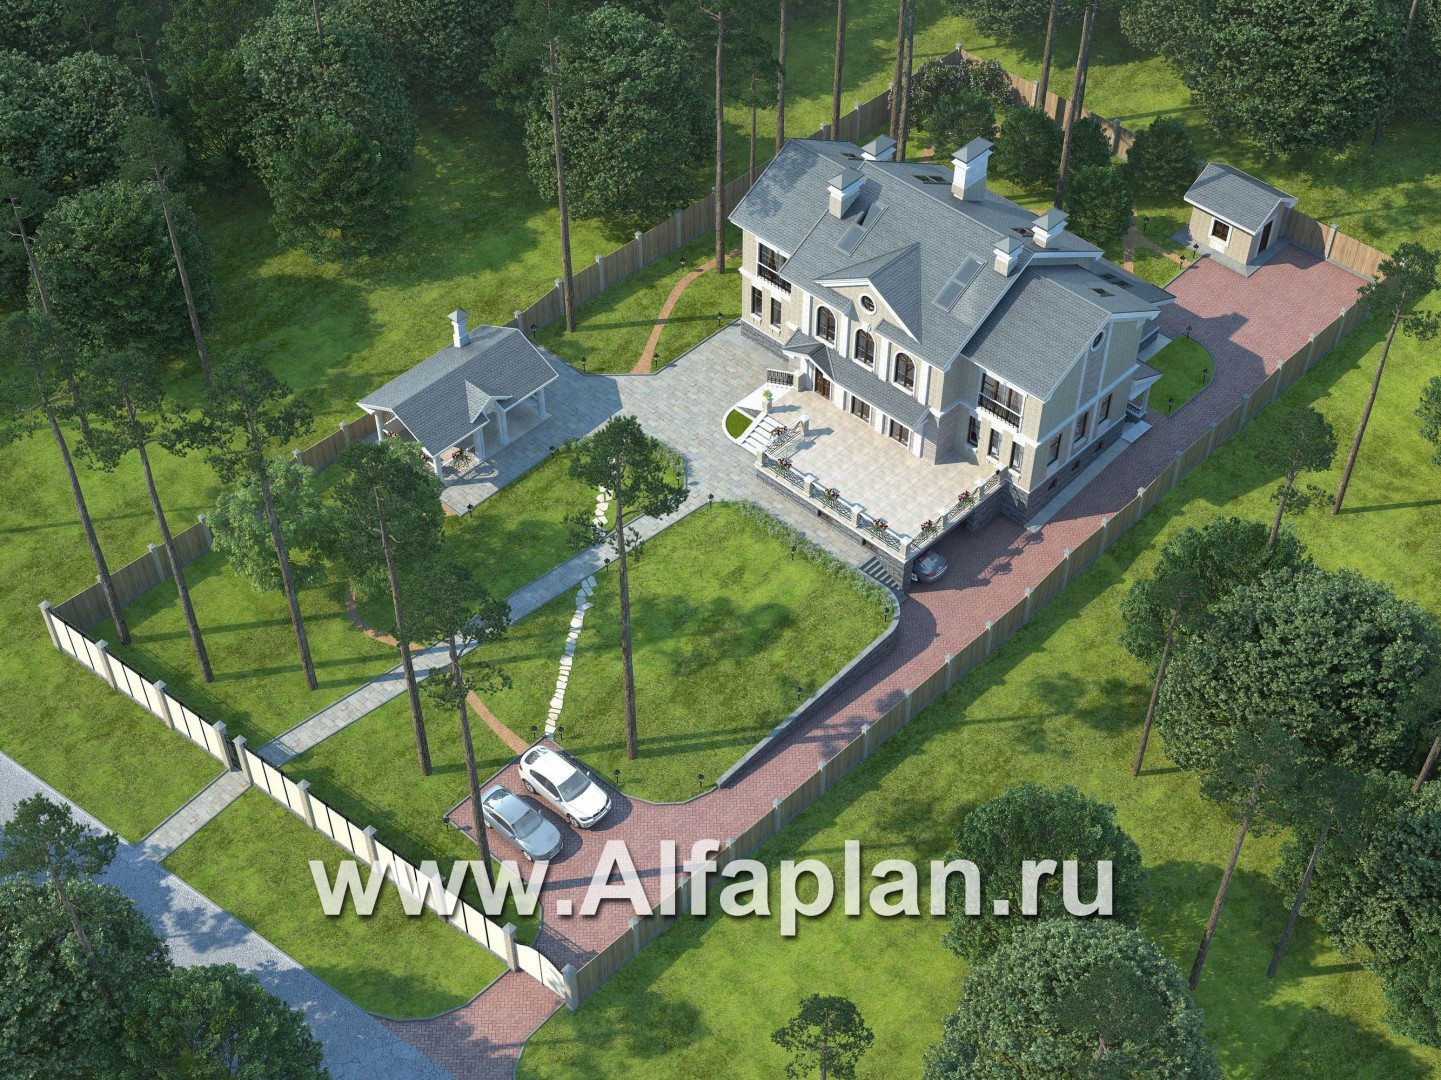 Проекты домов Альфаплан - «Поместье» - элитный коттедж в классическом стиле - дополнительное изображение №2